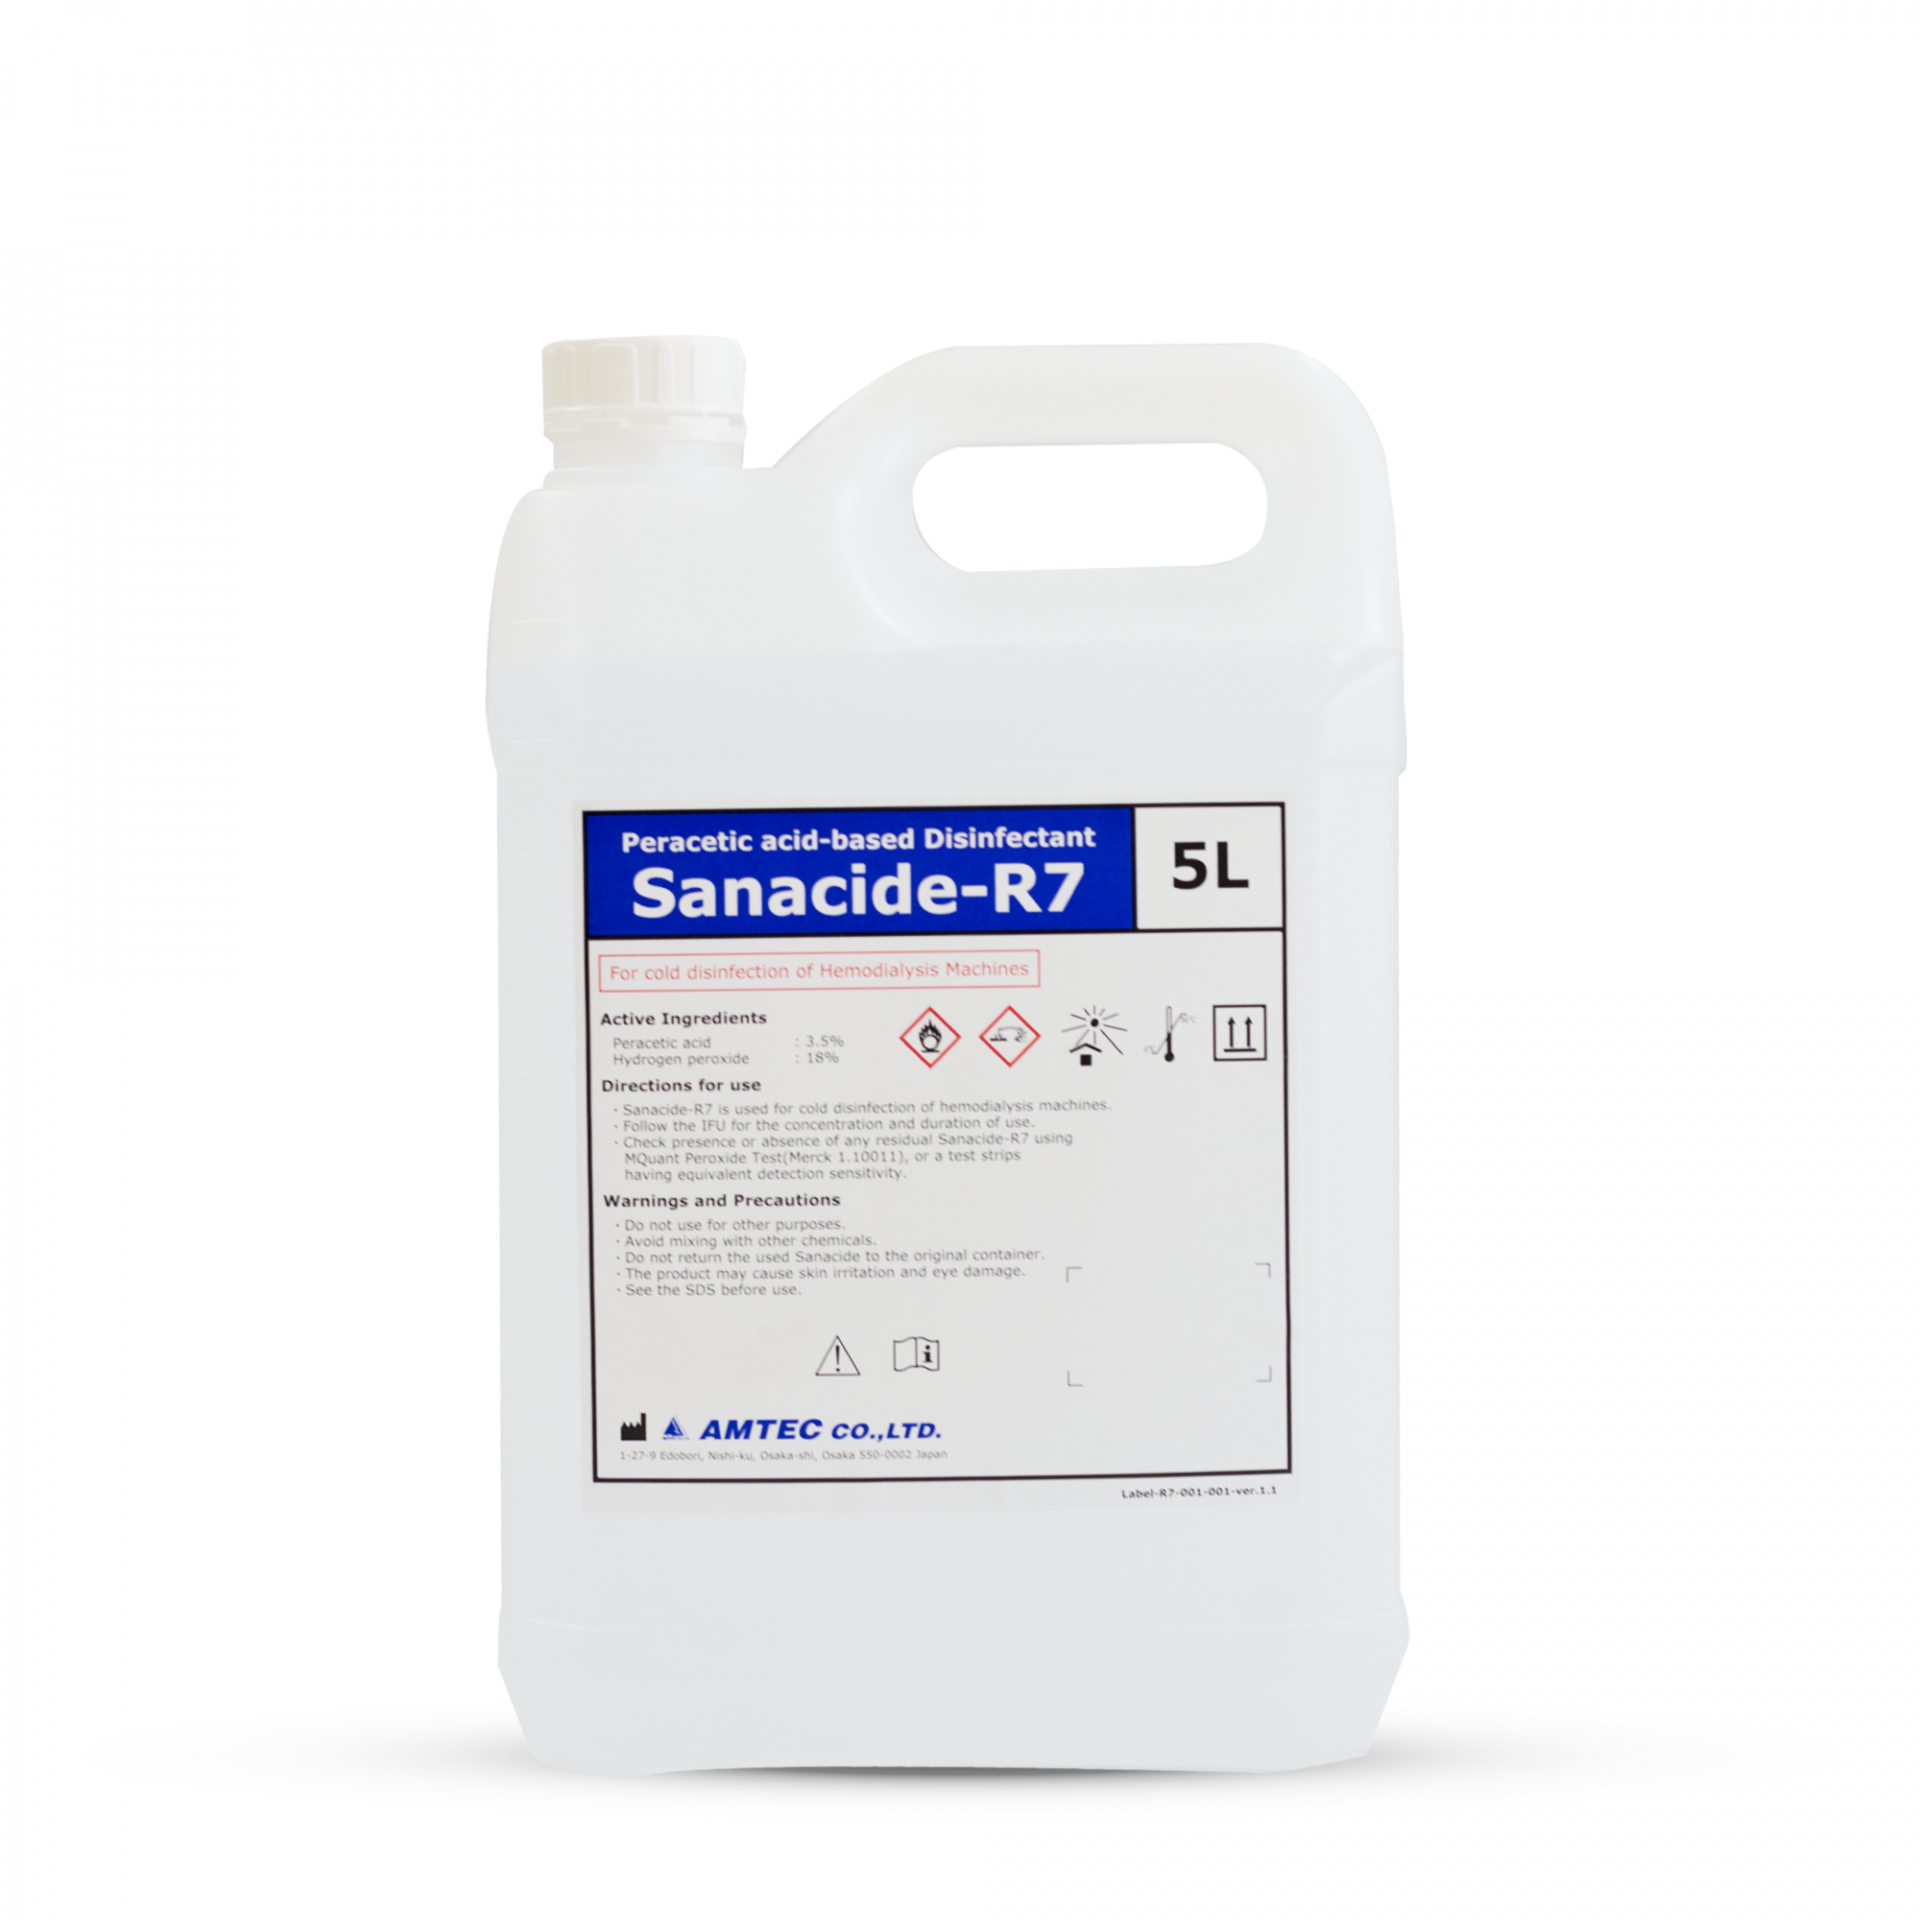 Sanaside-R7